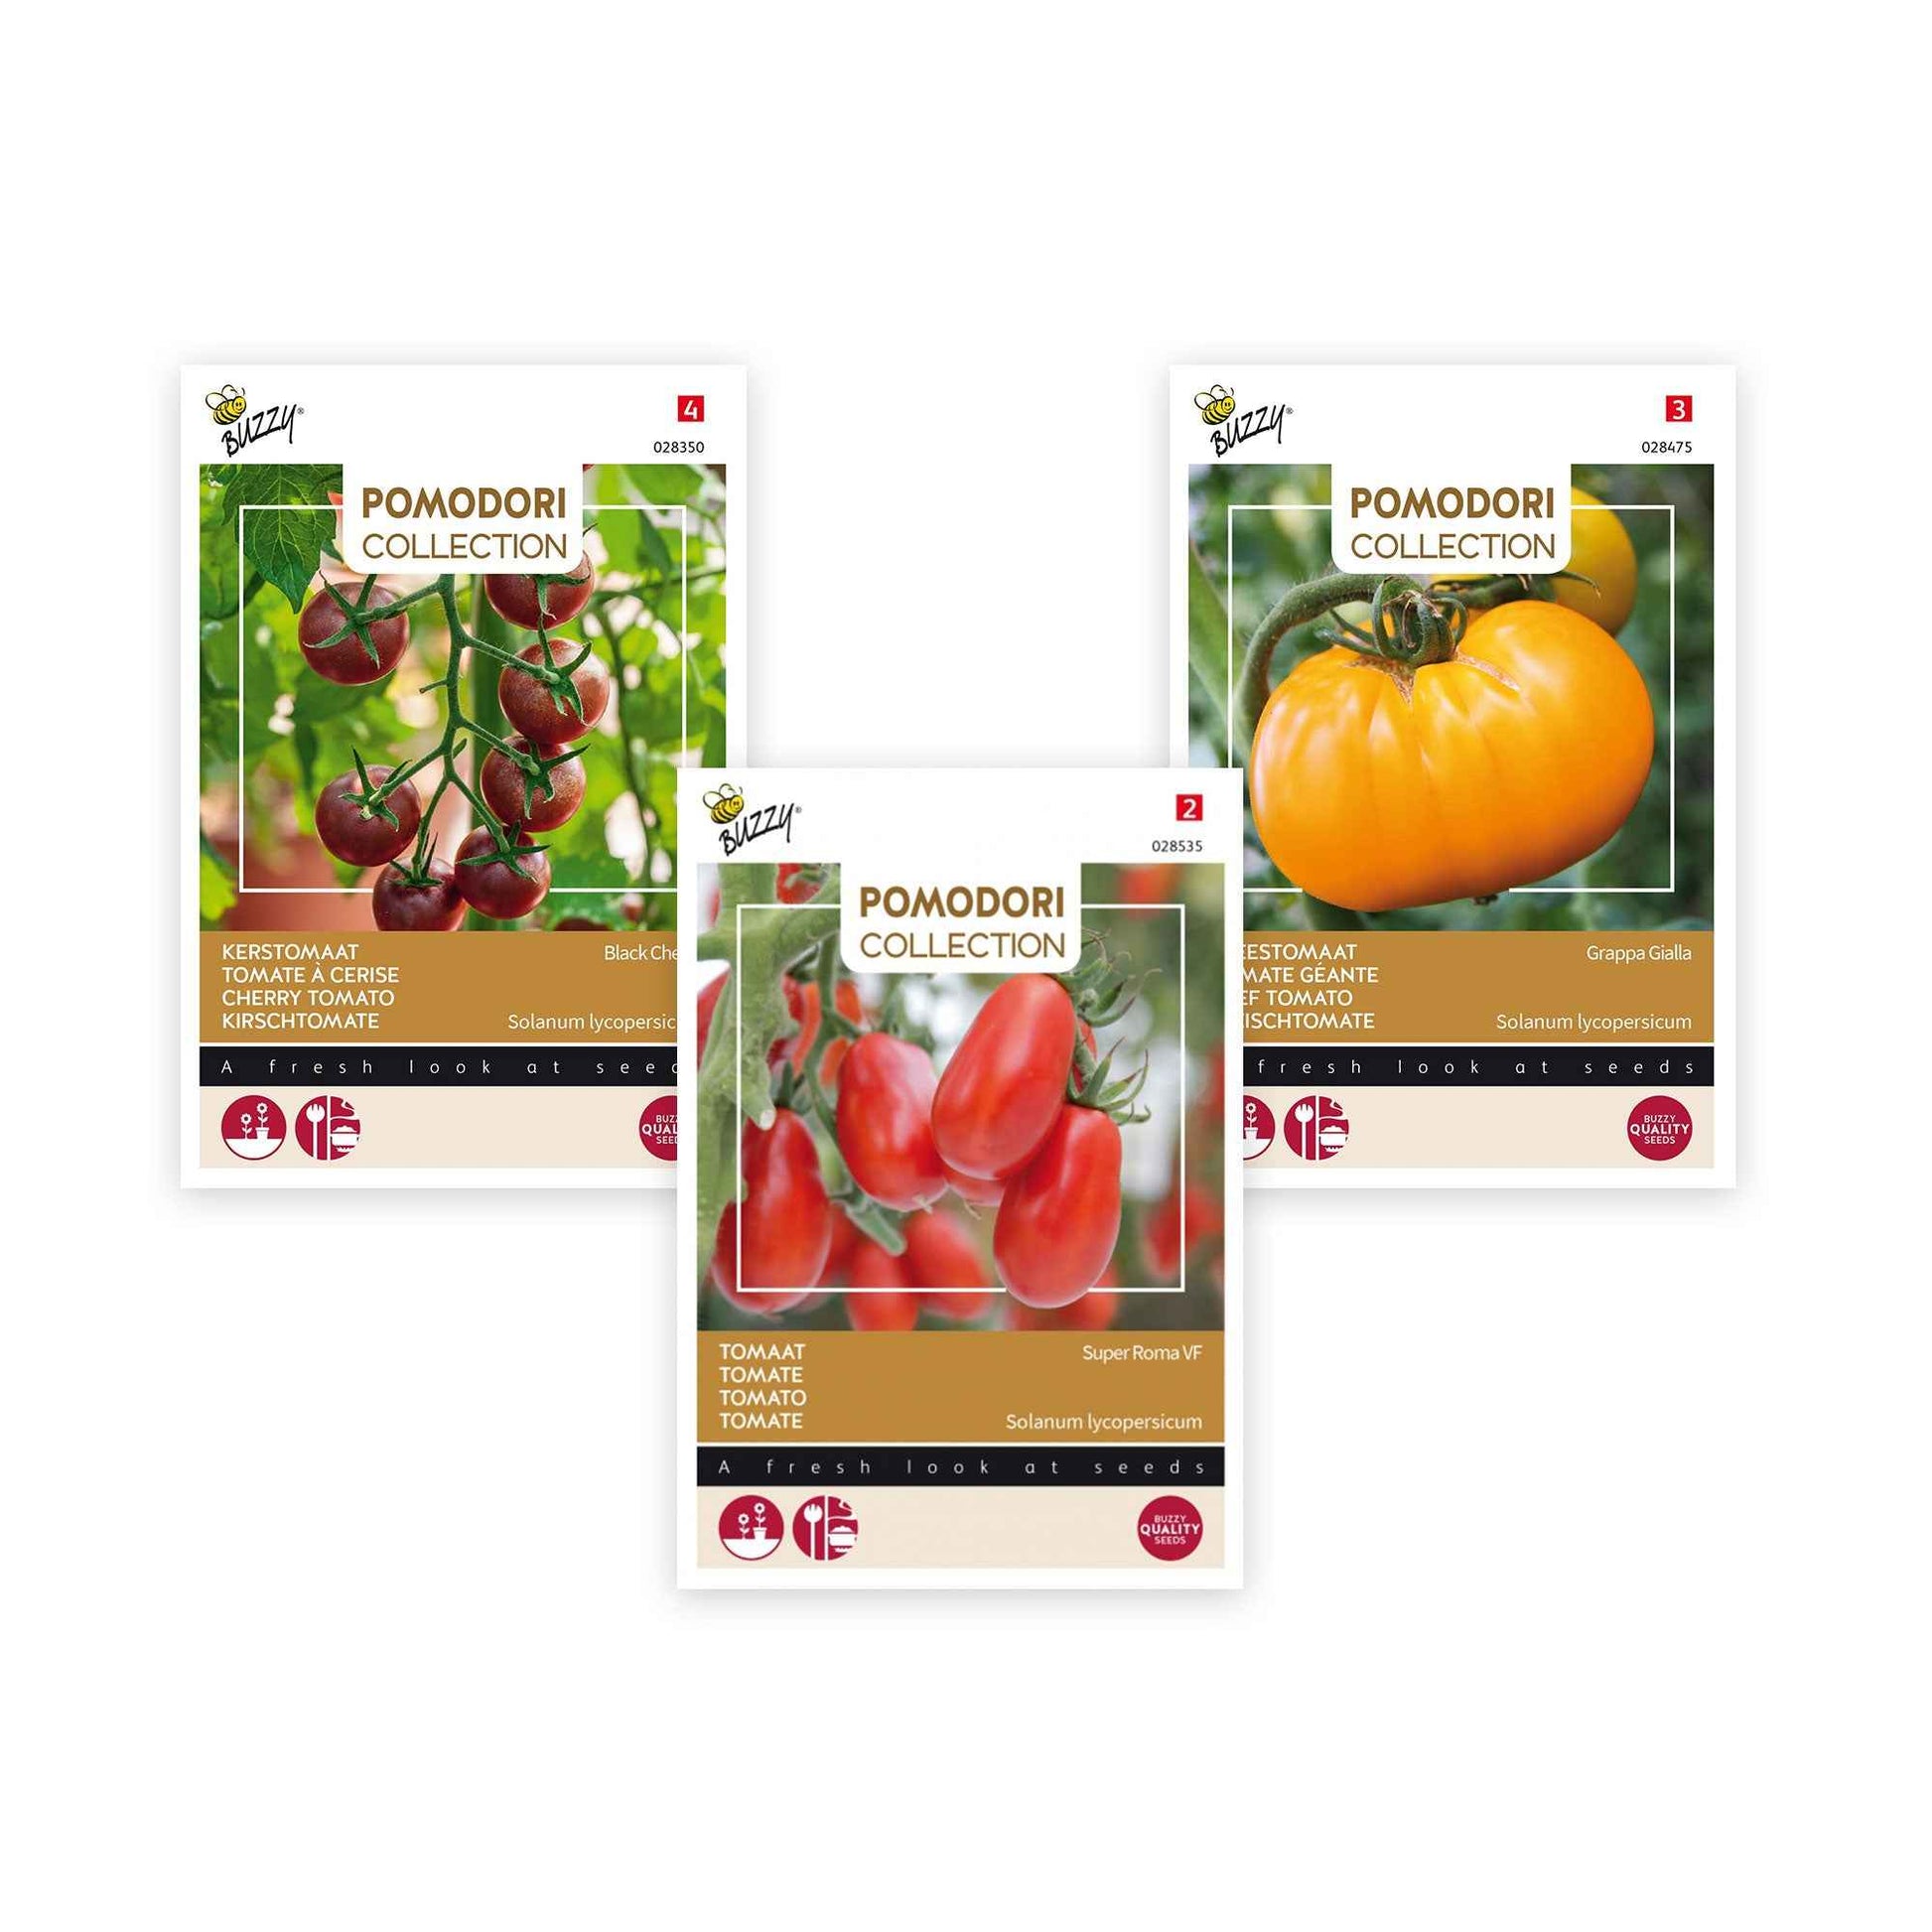 Paquet de tomates Solanum 'Tomates délicates' 7 m² - Semences de légumes - Entretien du potager